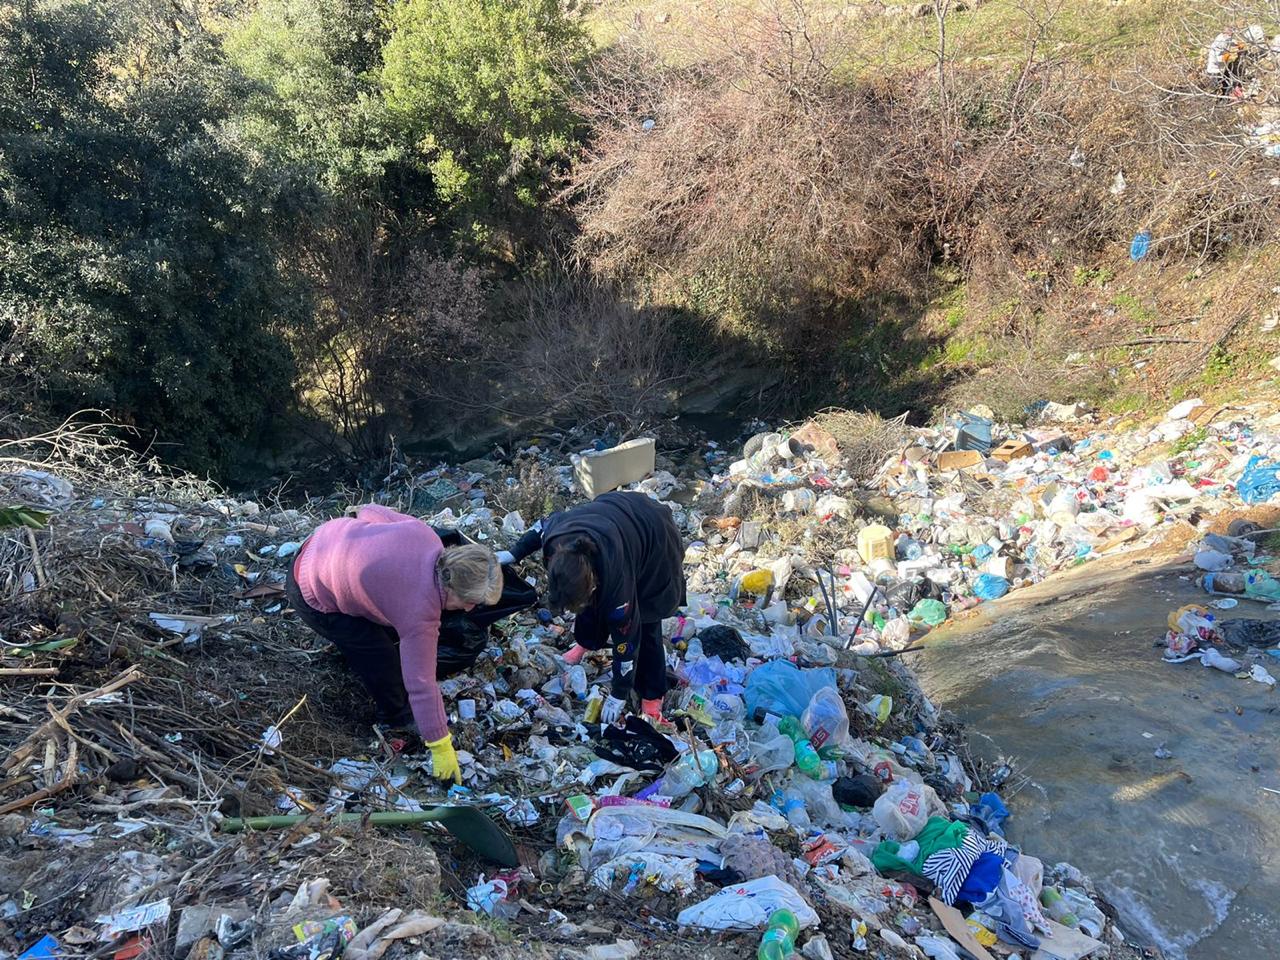 Albania Illegal Dump Linze 2